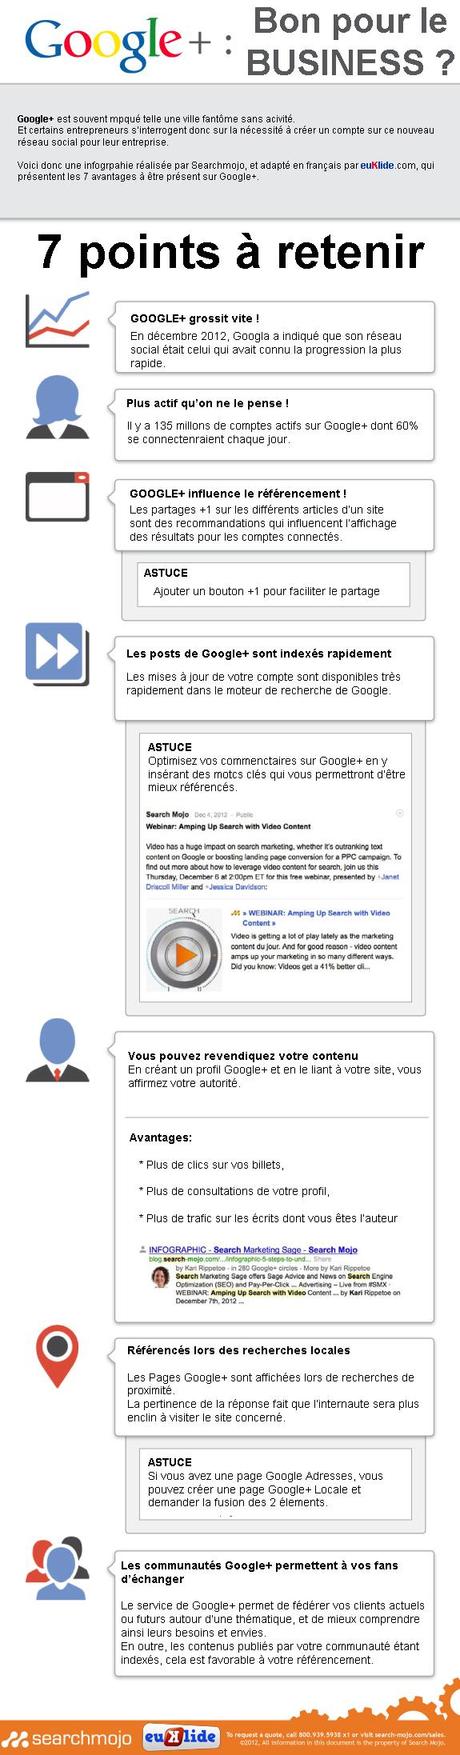 [Infographie] Pourquoi une entreprise doit être sur Google+ ?